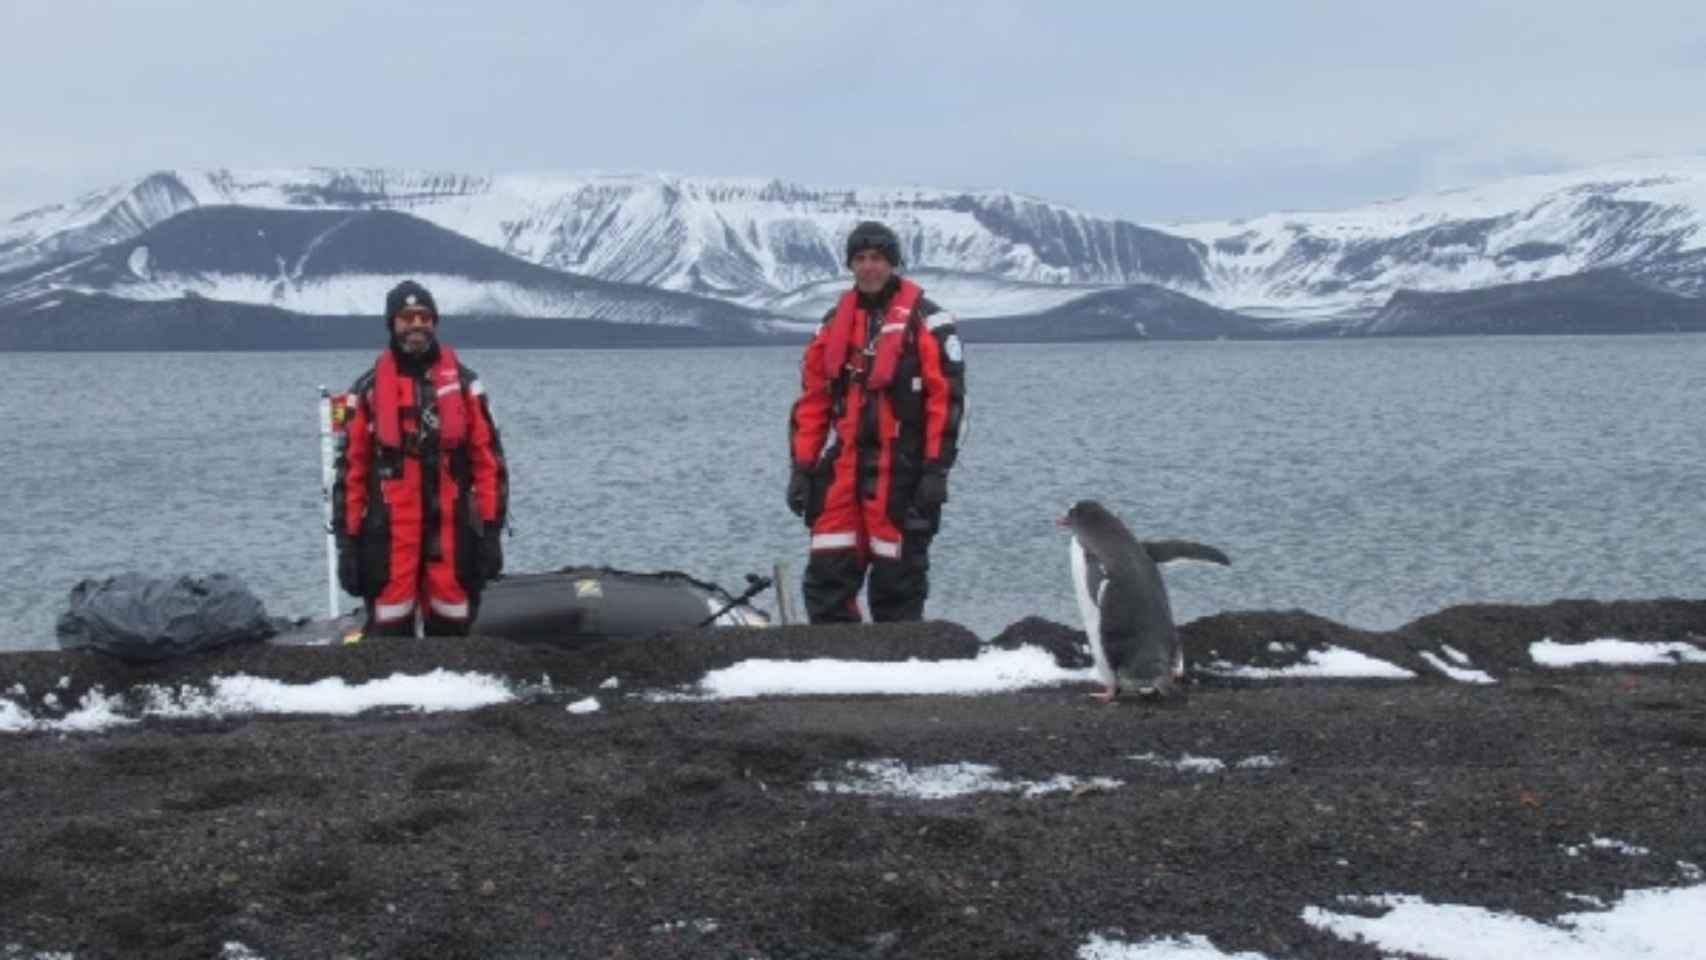 Rescate de pingüinos durante la XXXV Campaña Antártica.